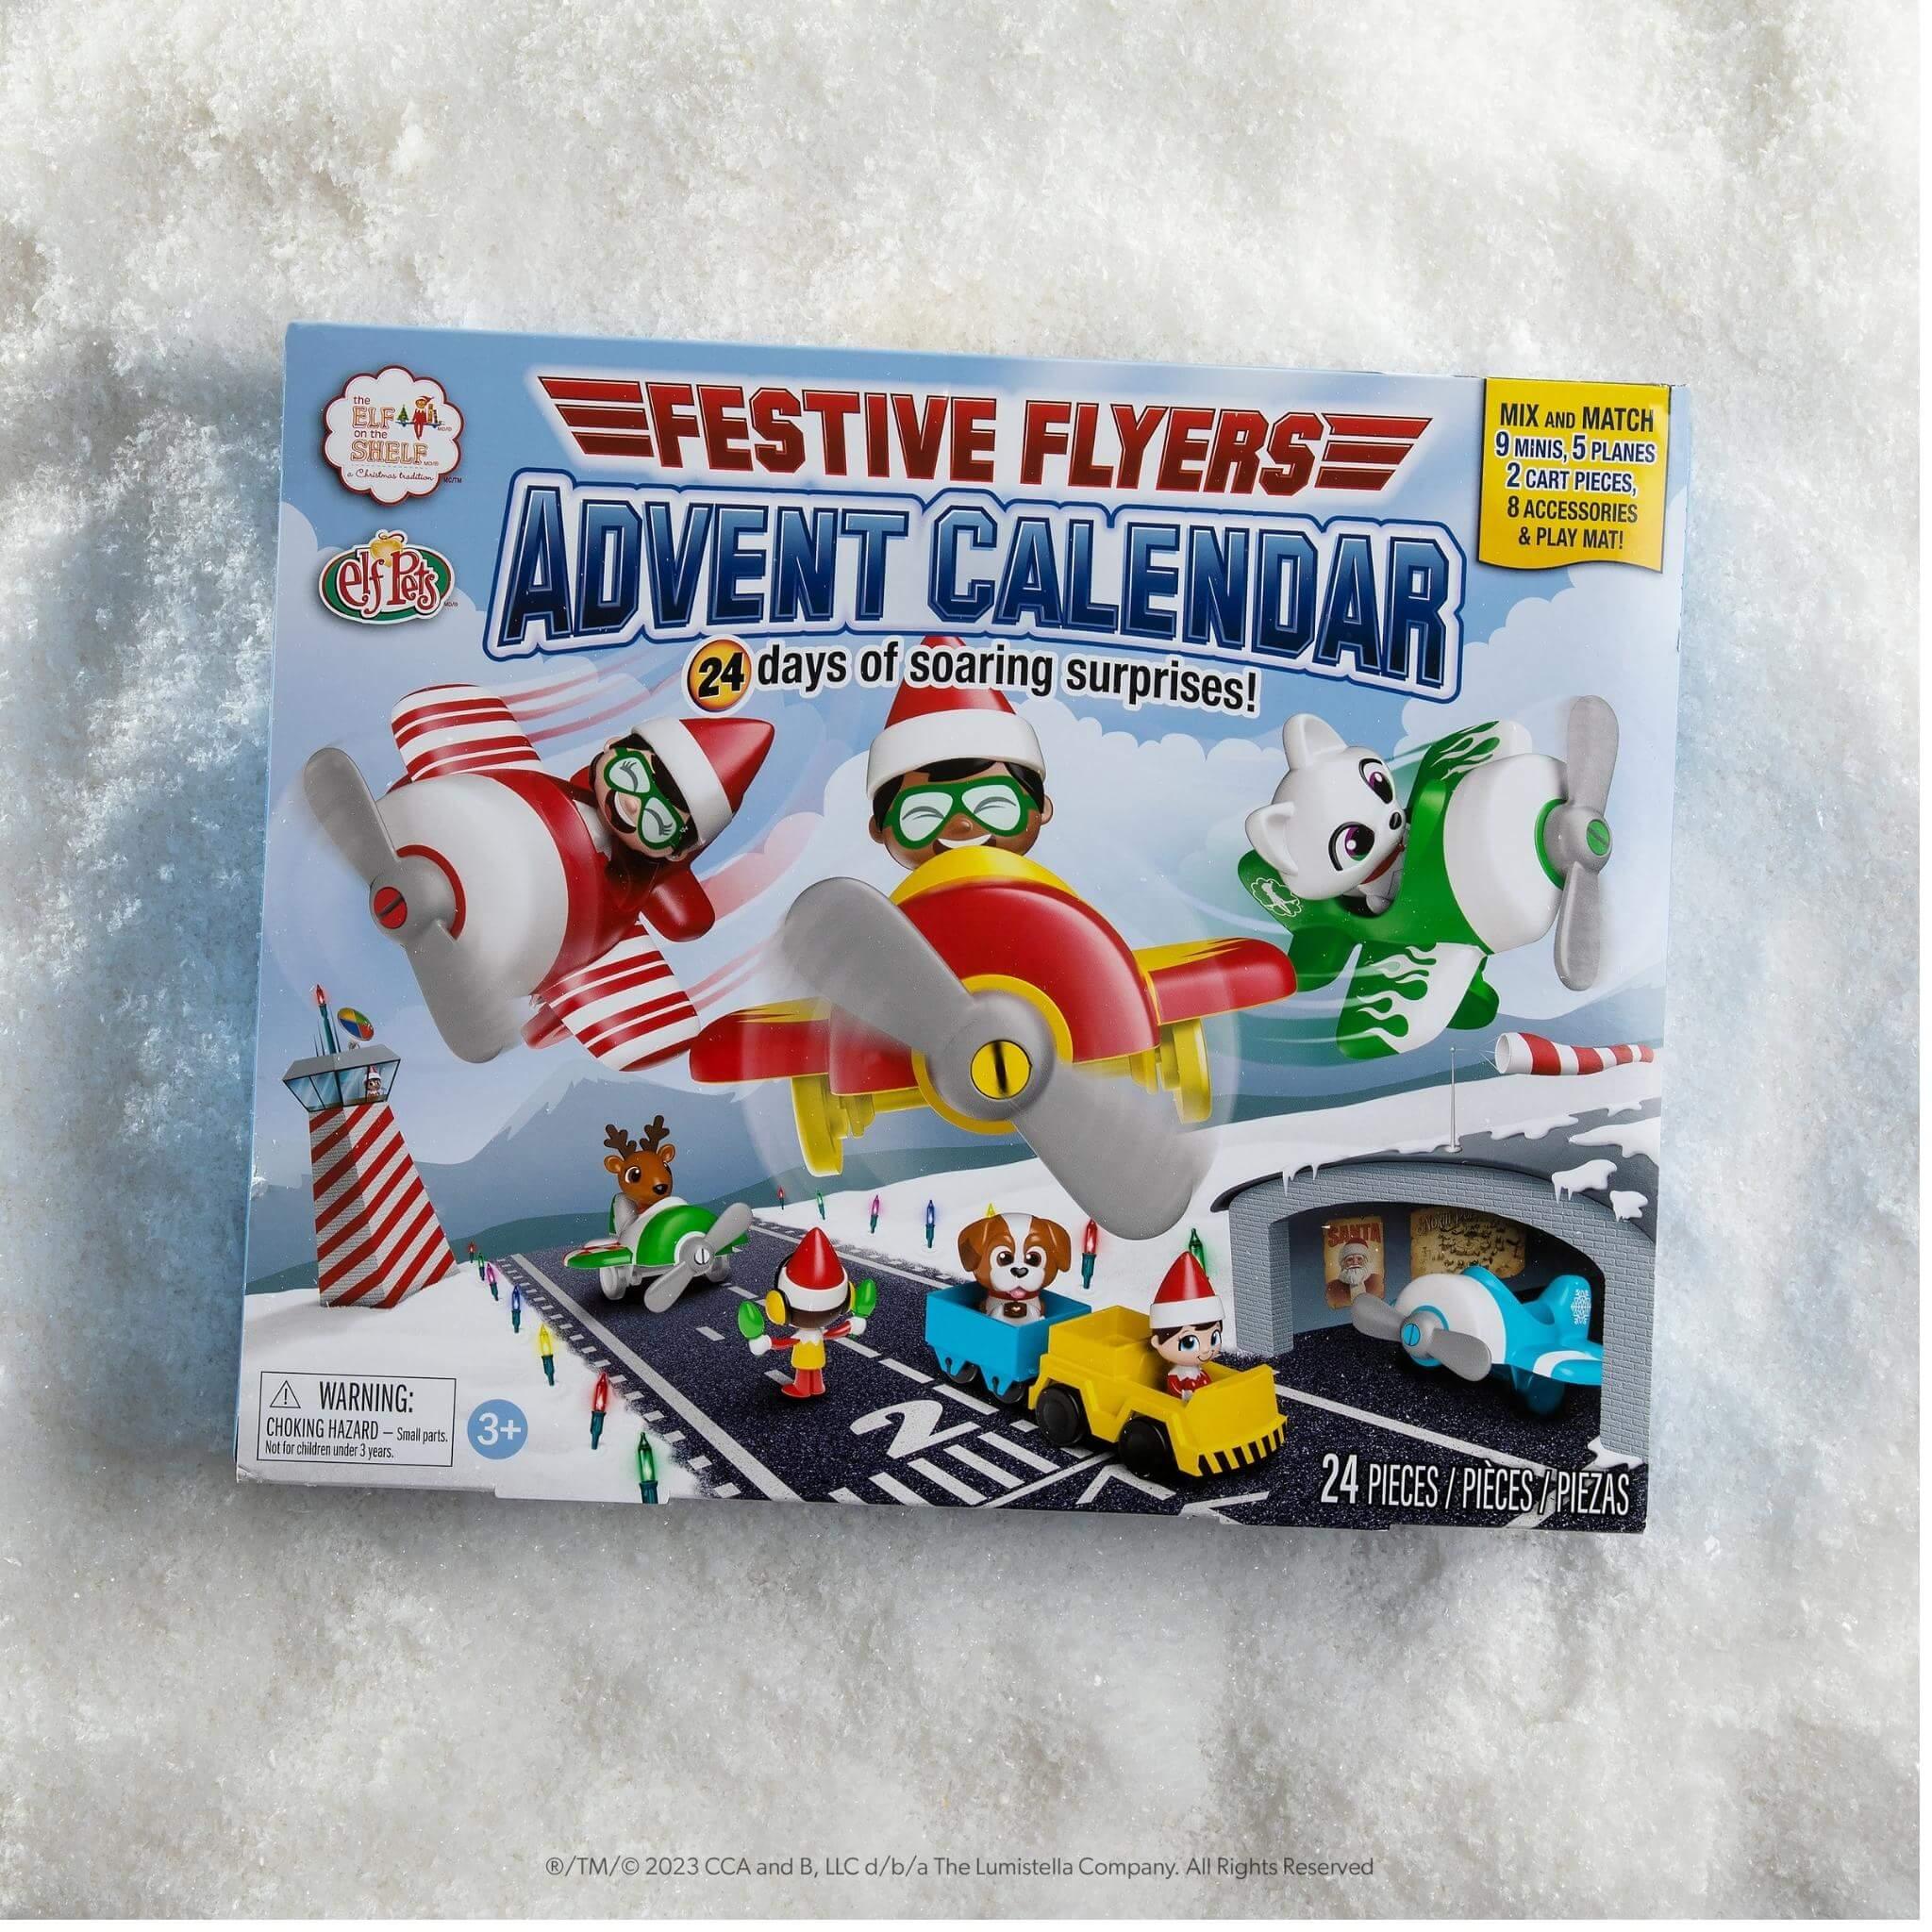 Festive Flyers Advent Calendar - The Elf on The Shelf